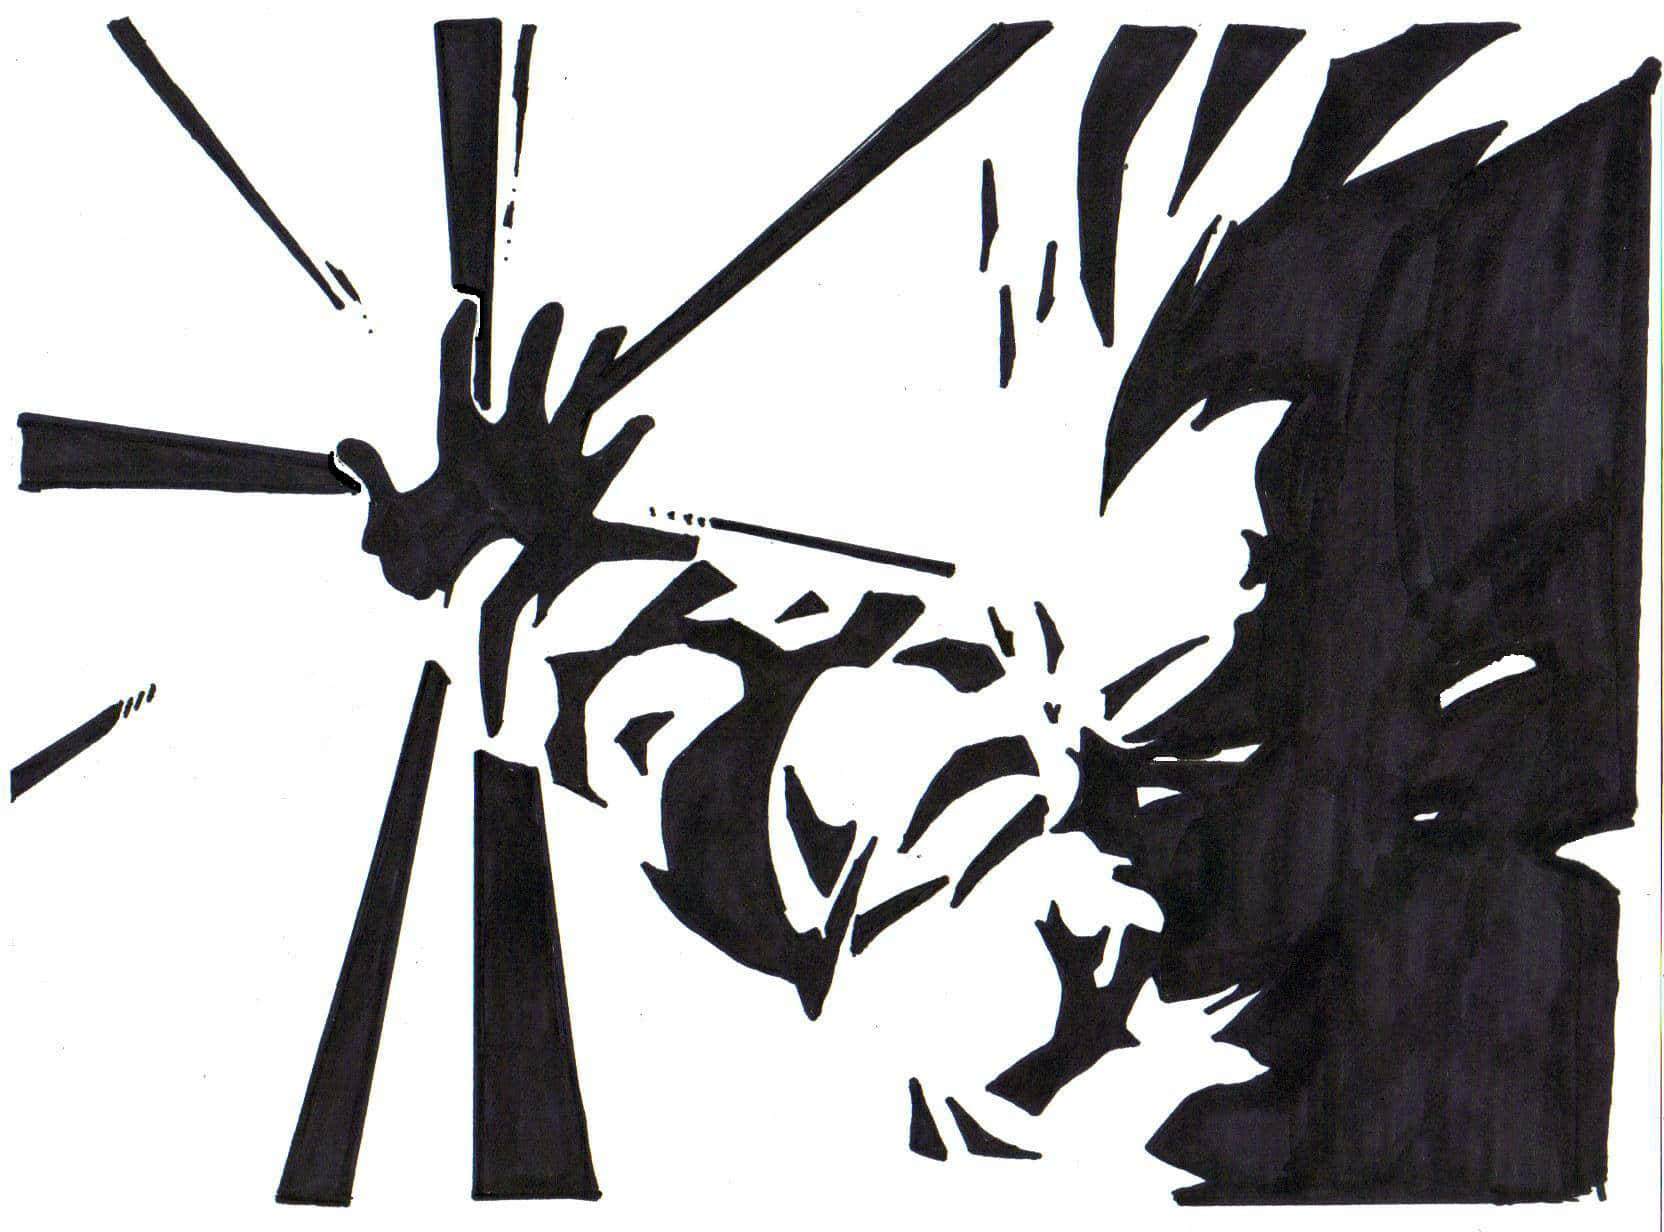 Den intensive magt af Vegeta i sort og hvid. Wallpaper